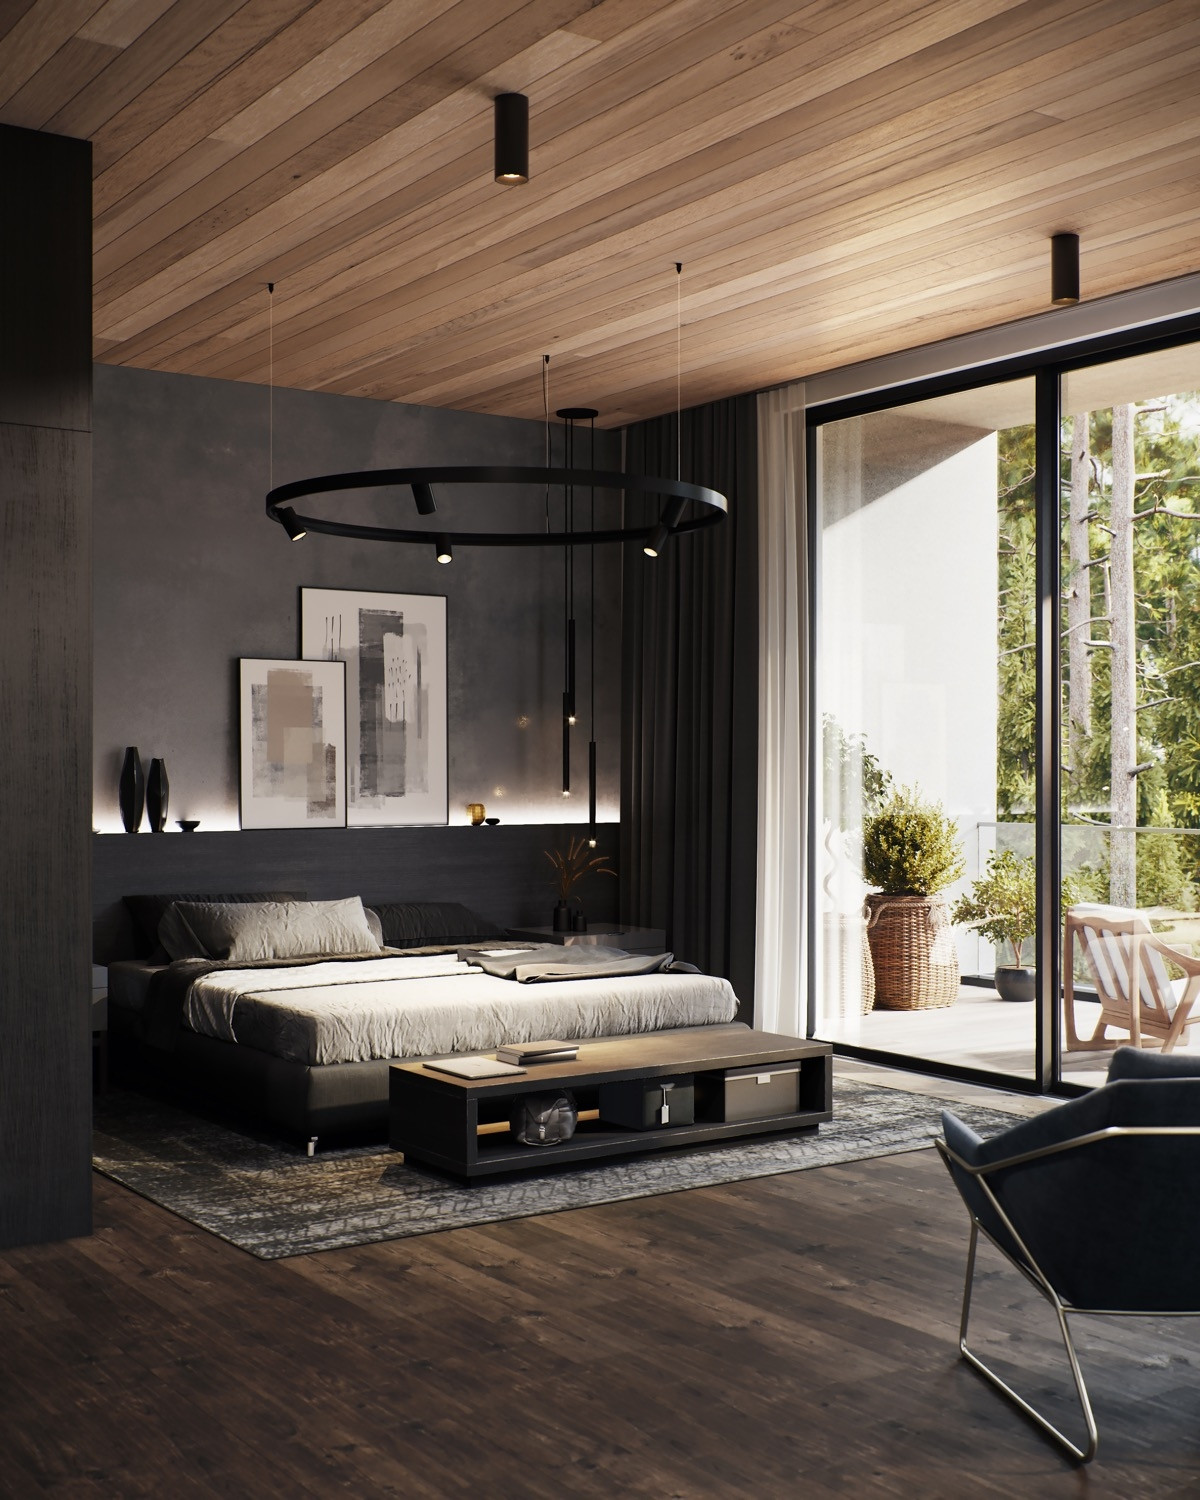 Màu đen và gỗ là một sự kết hợp vô cùng ăn ý phù hợp với kiểu trang trí phòng ngủ mộc mạc.